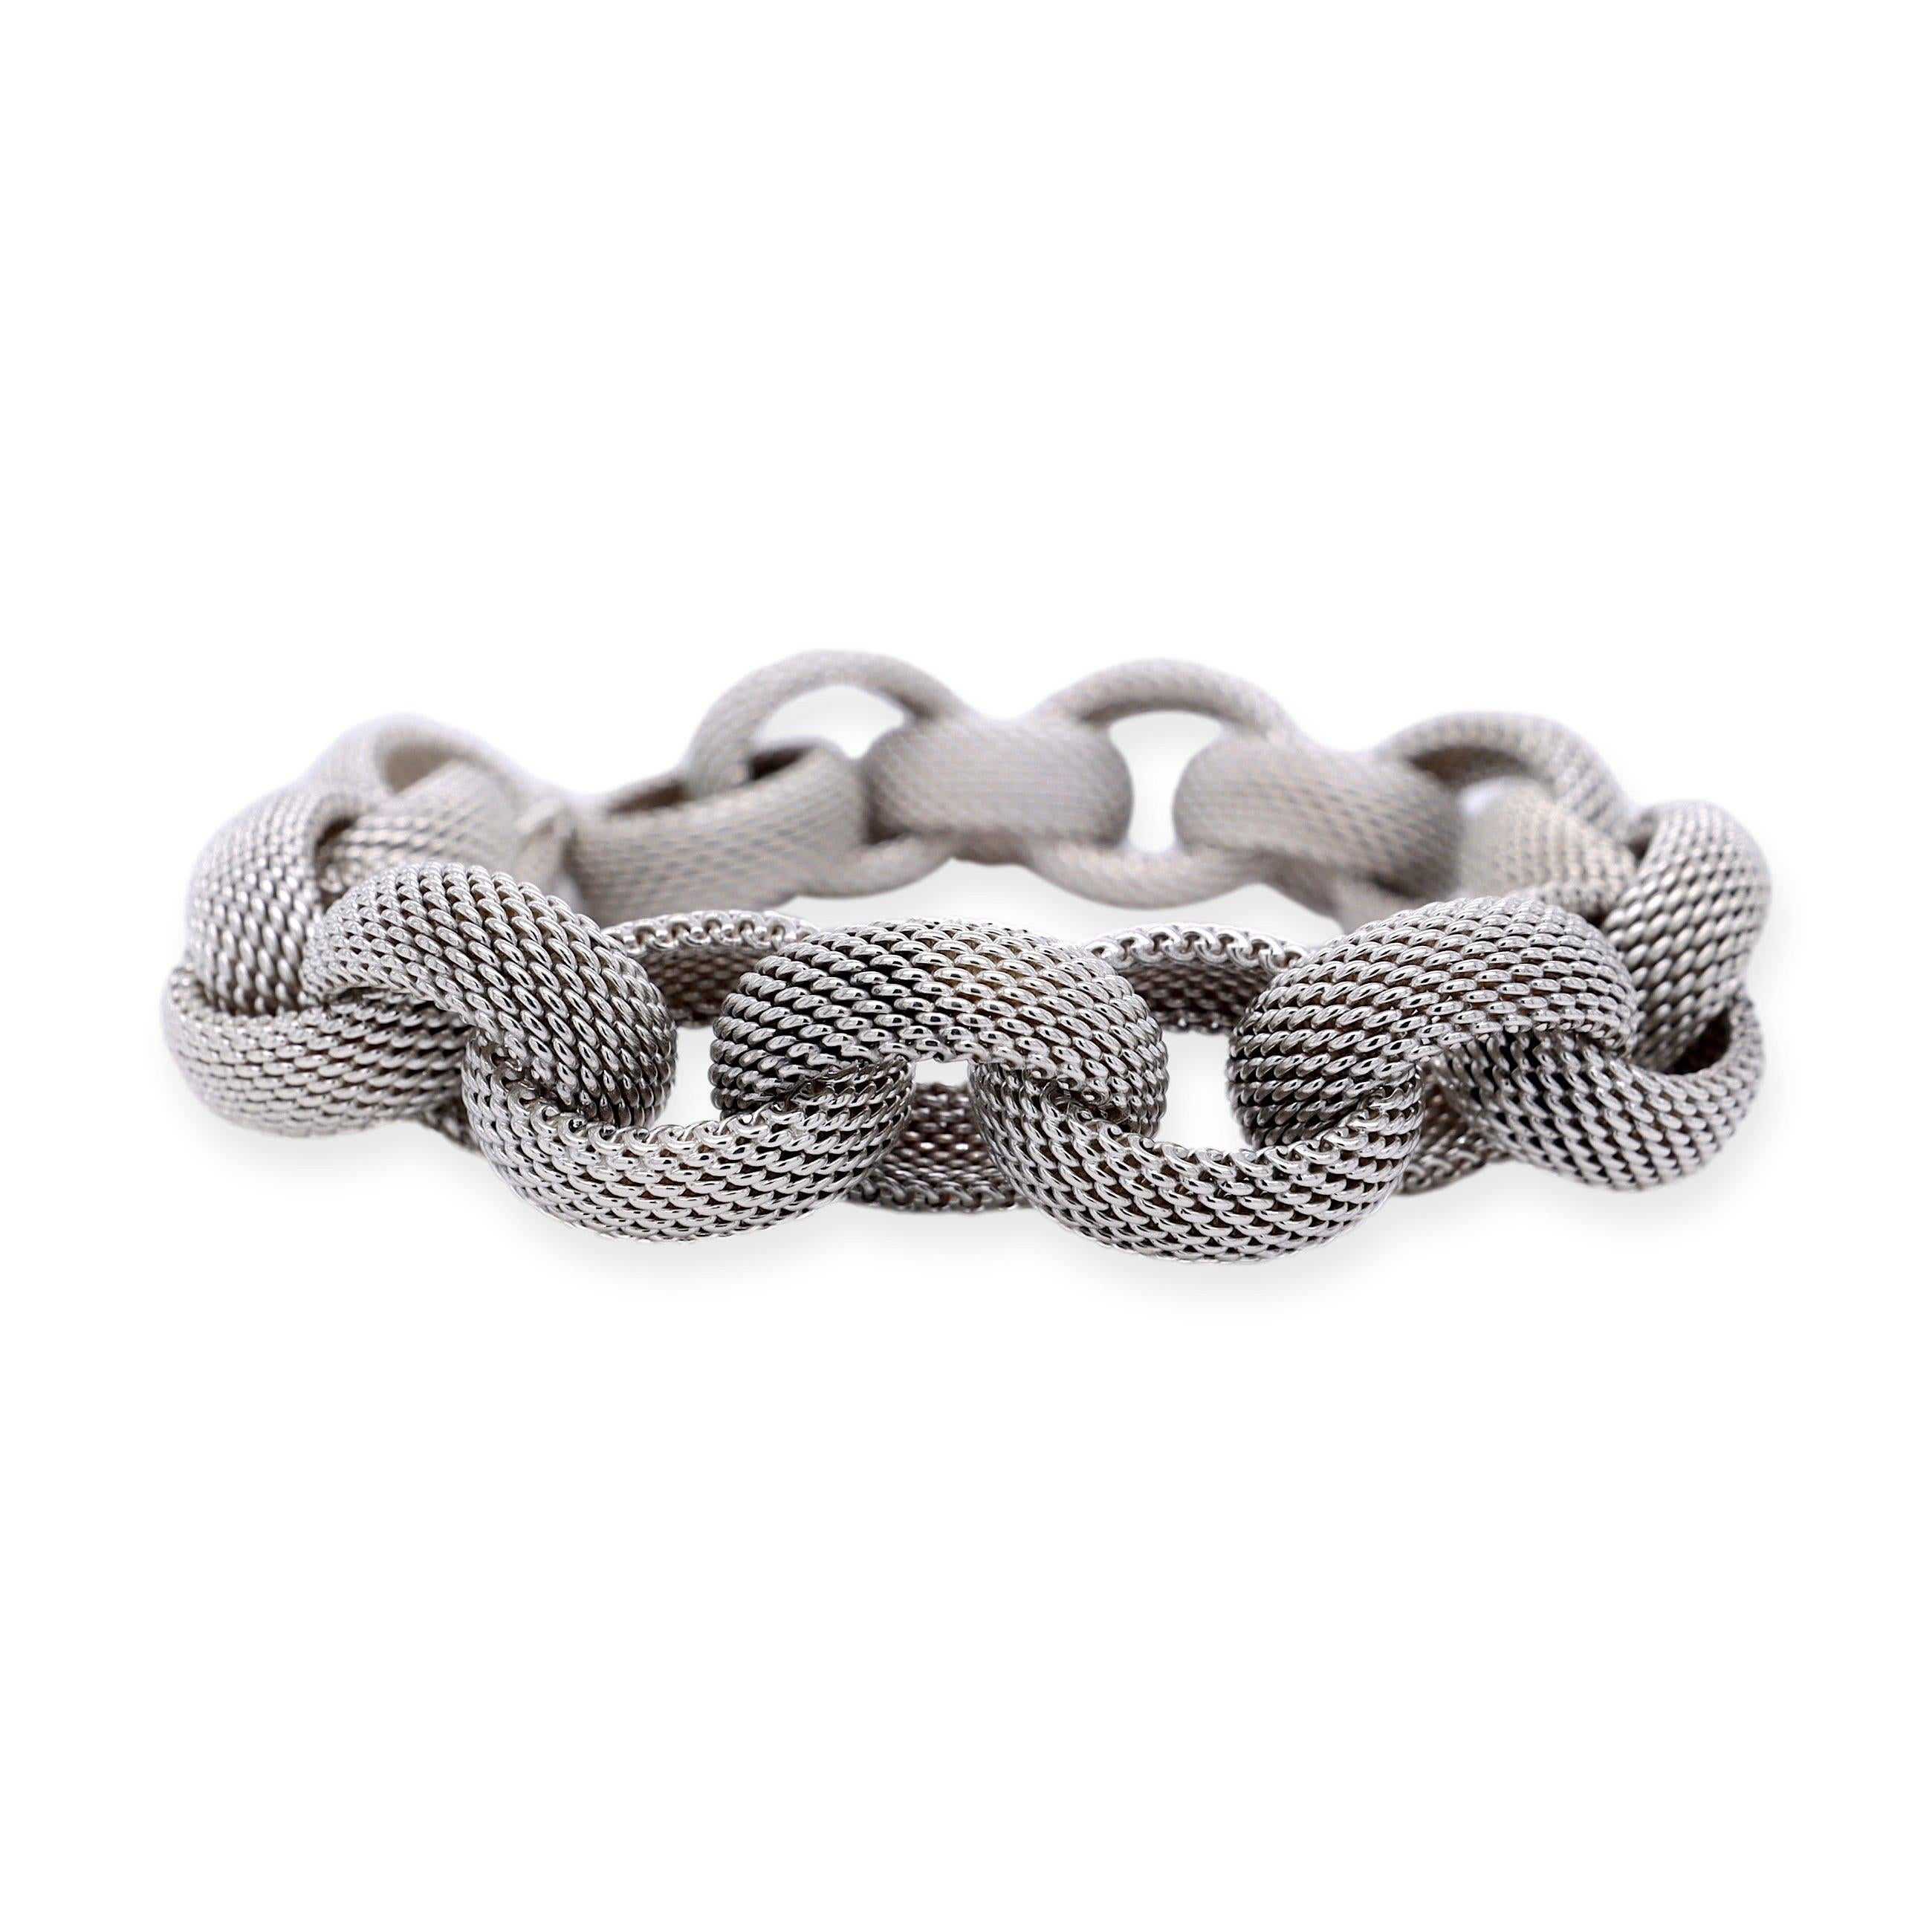 Tiffany & Co. Link Somerset Toggle Bracelet ist ein exquisites Schmuckstück, das aus feinstem Sterlingsilber gefertigt ist. Das Armband besteht aus ovalen Gliedern, die ineinander greifen und ein elegantes und raffiniertes Design ergeben. Mit einer